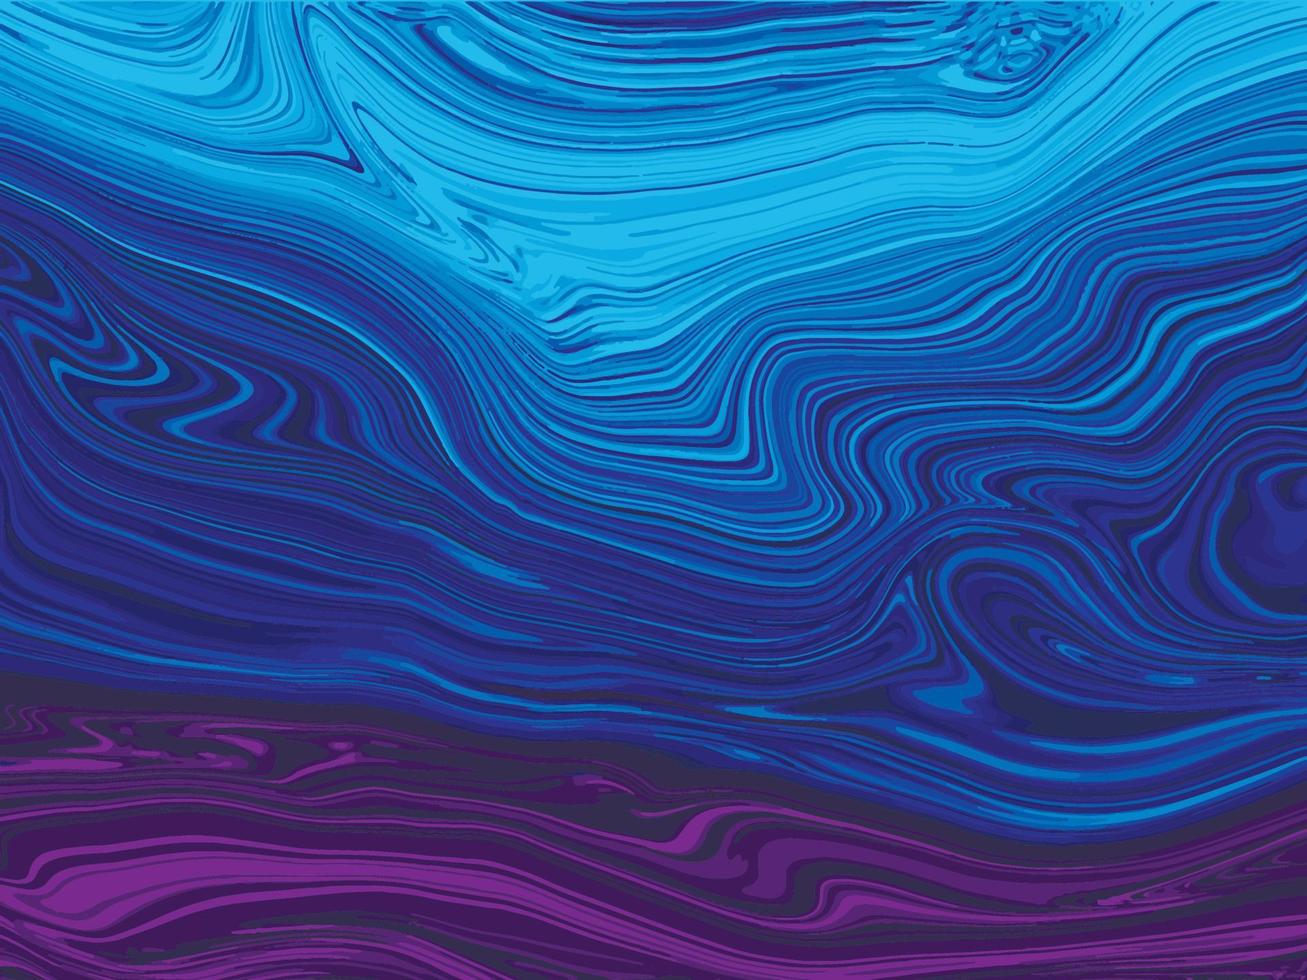 sfondo di marmo liquido di diversi colori viola blu arte astratta strisce illustrazione vettoriale